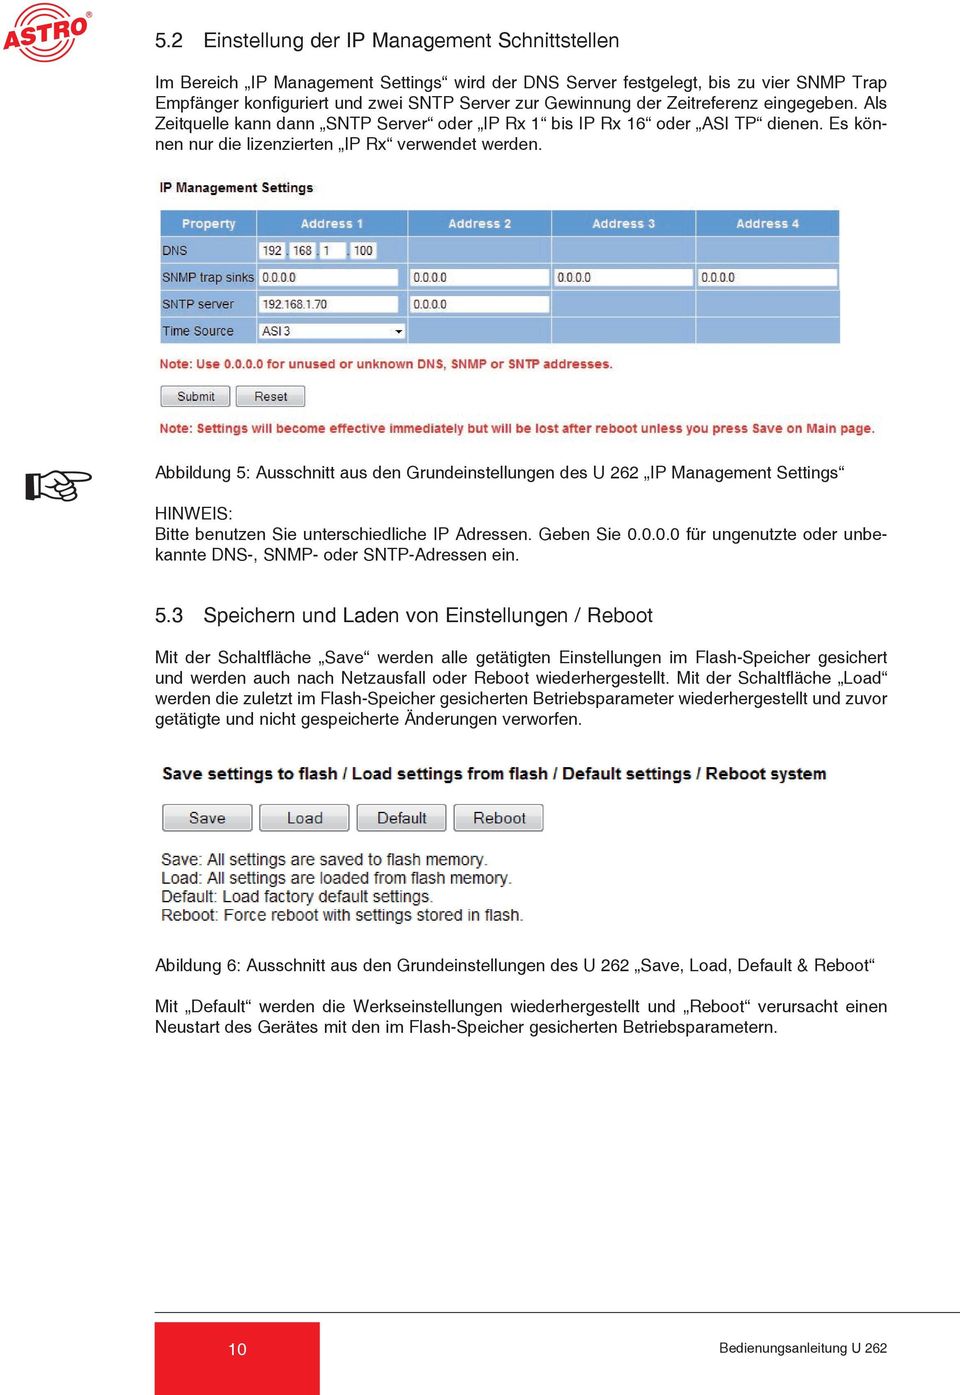 Abbildung 5: Ausschnitt aus den Grundeinstellungen des U 262 IP Management Settings HINWEIS: Bitte benutzen Sie unterschiedliche IP Adressen. Geben Sie 0.